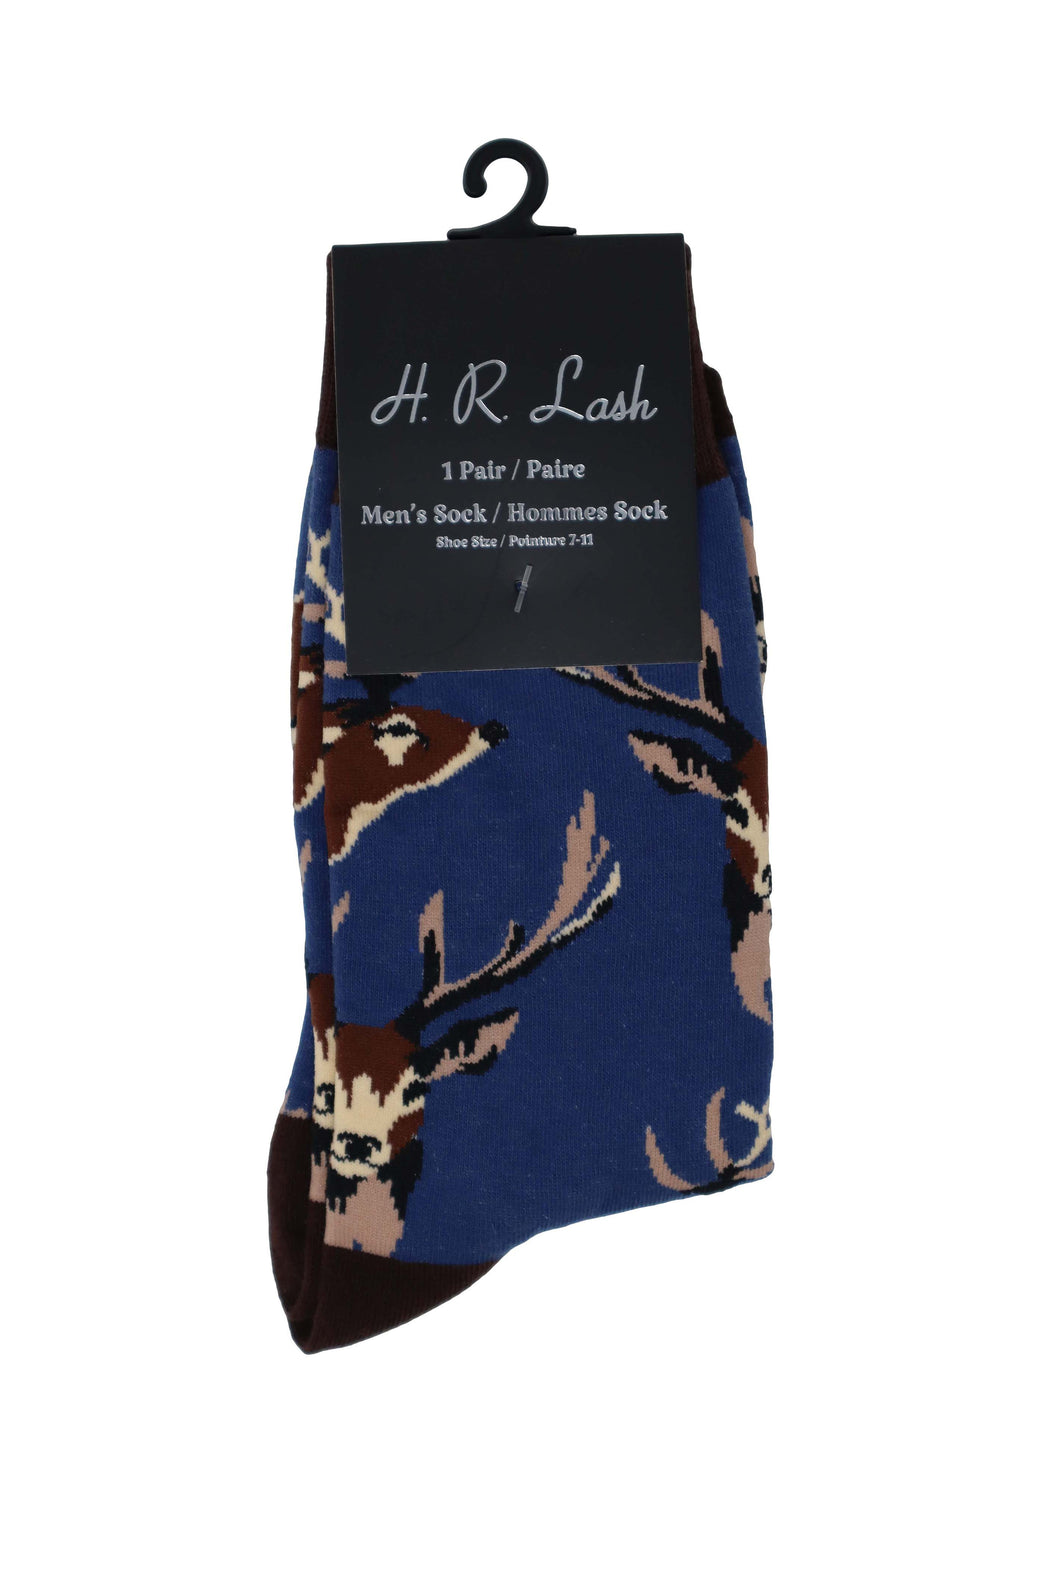 H. R. Lash | FS184 | Fun Socks | Deer Antlers